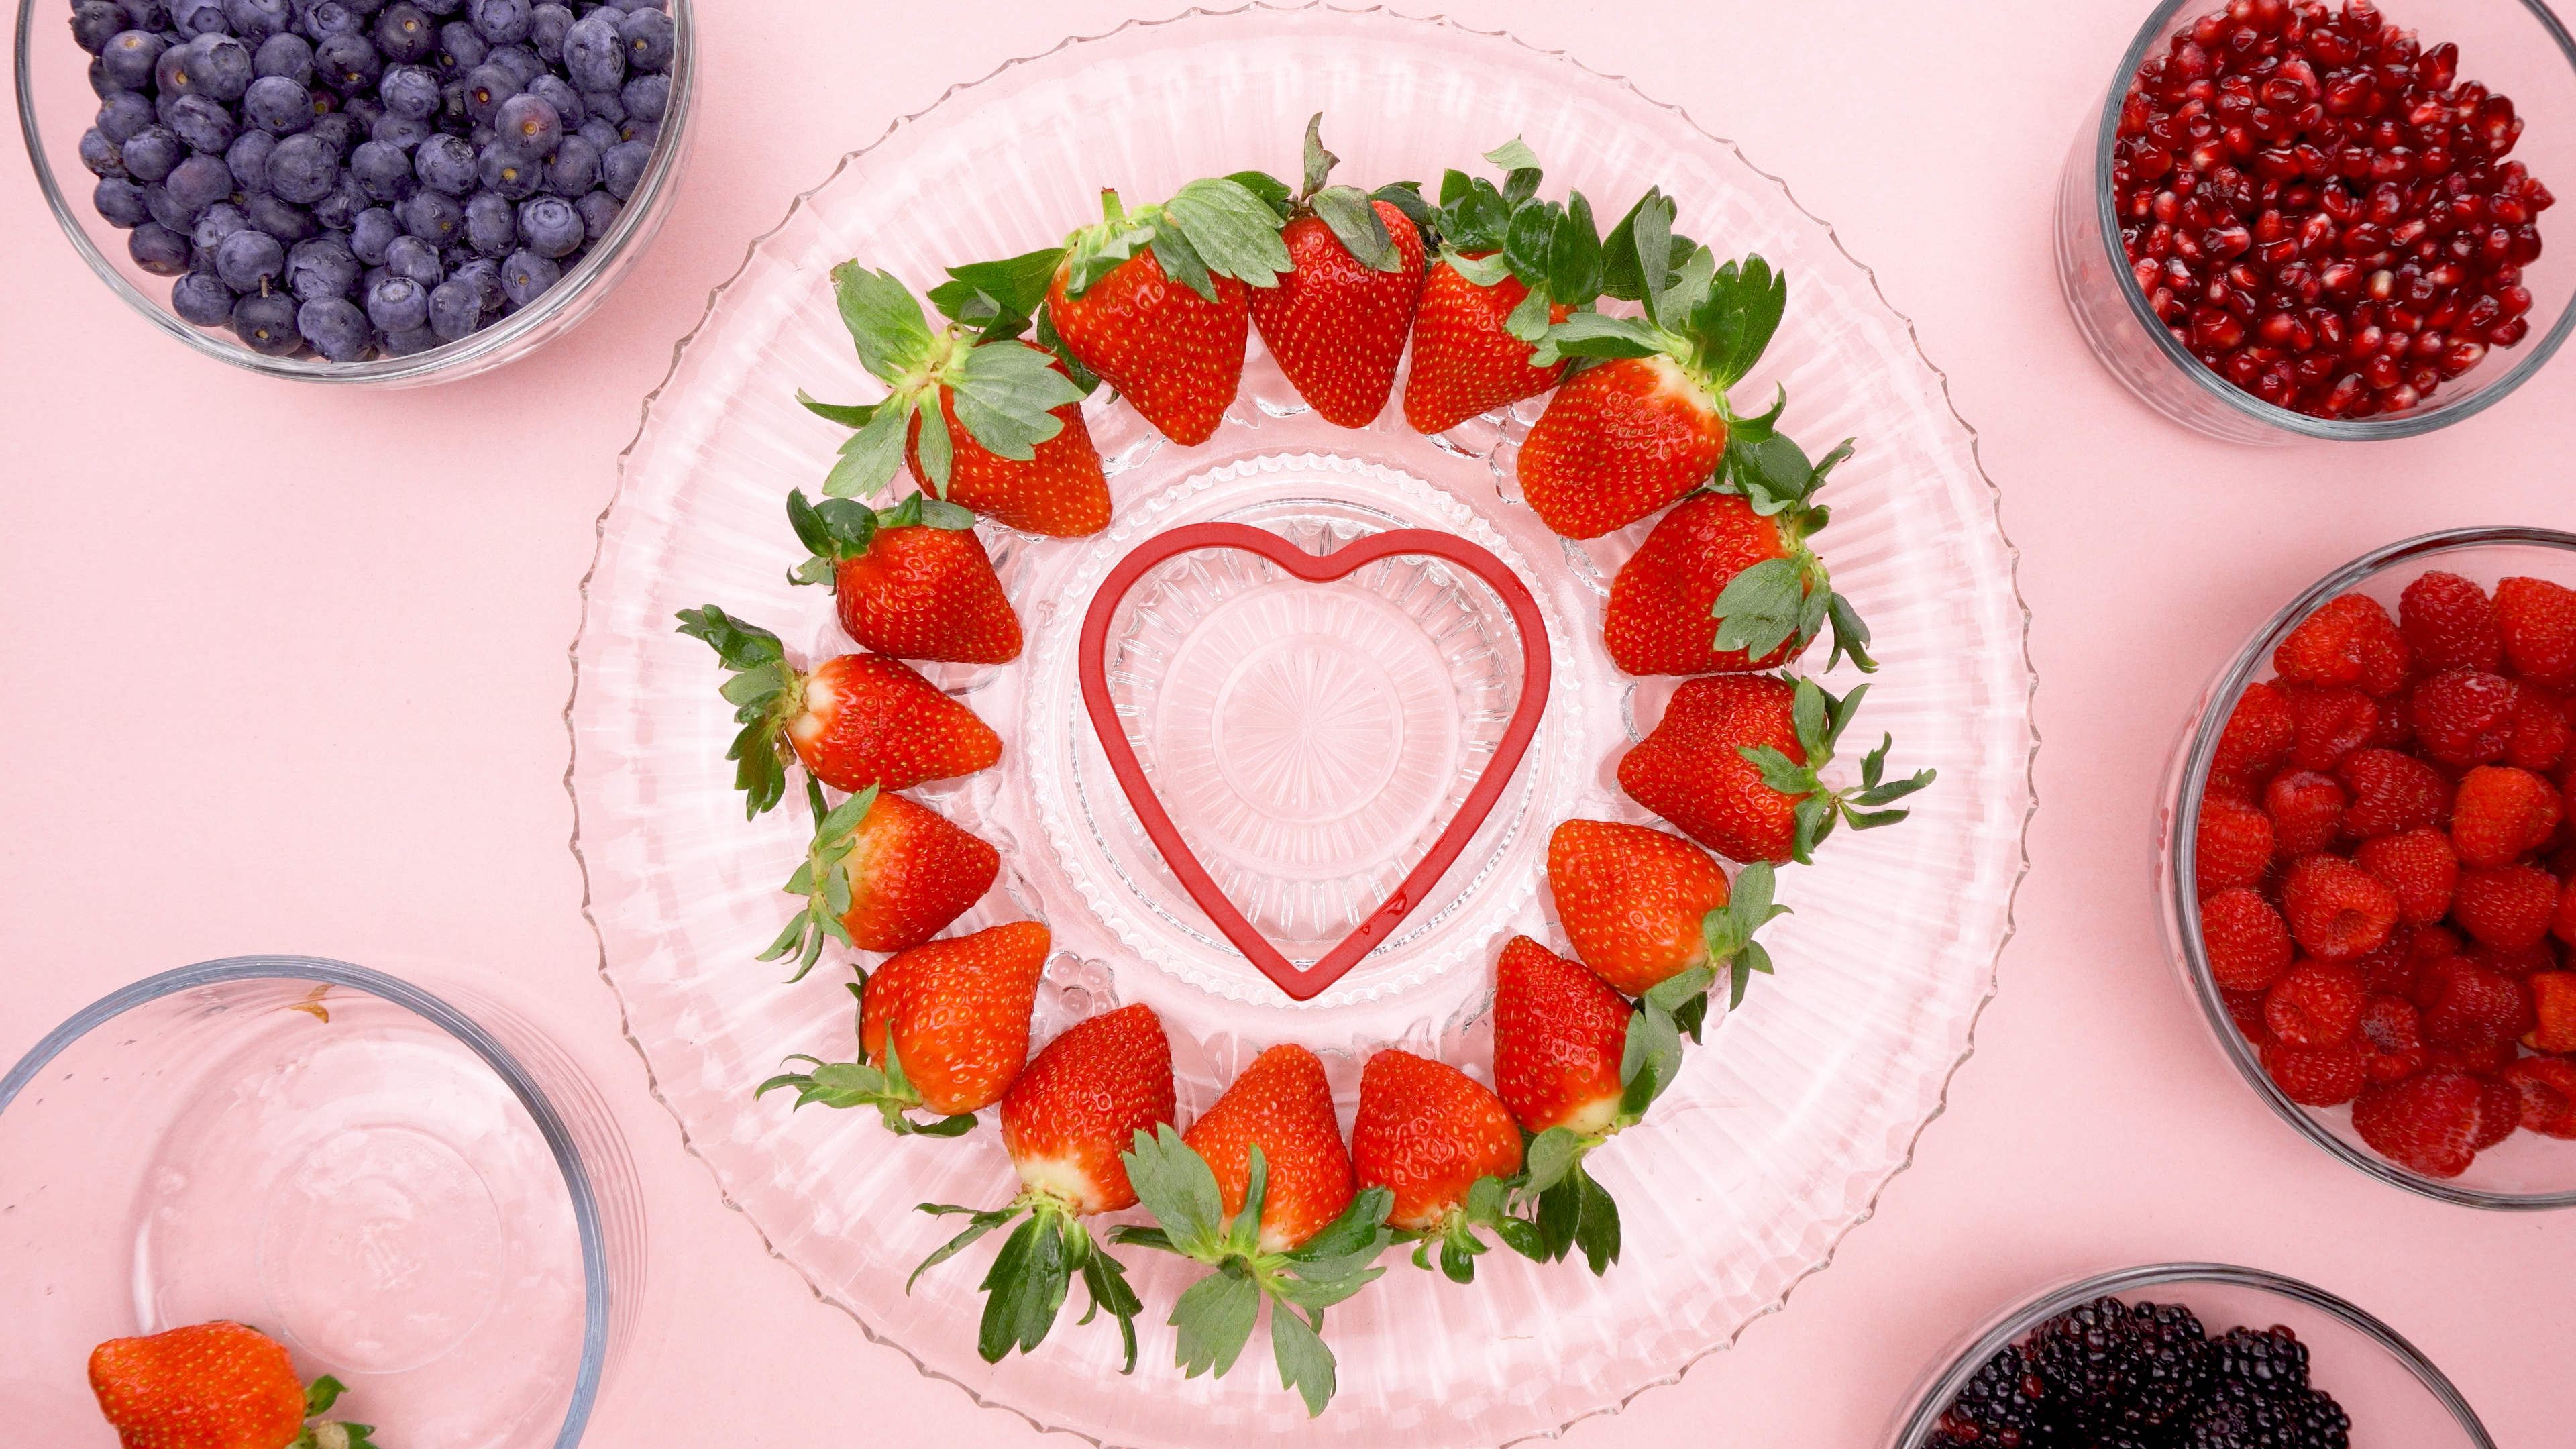 Strawberries around a heart cookie cutter